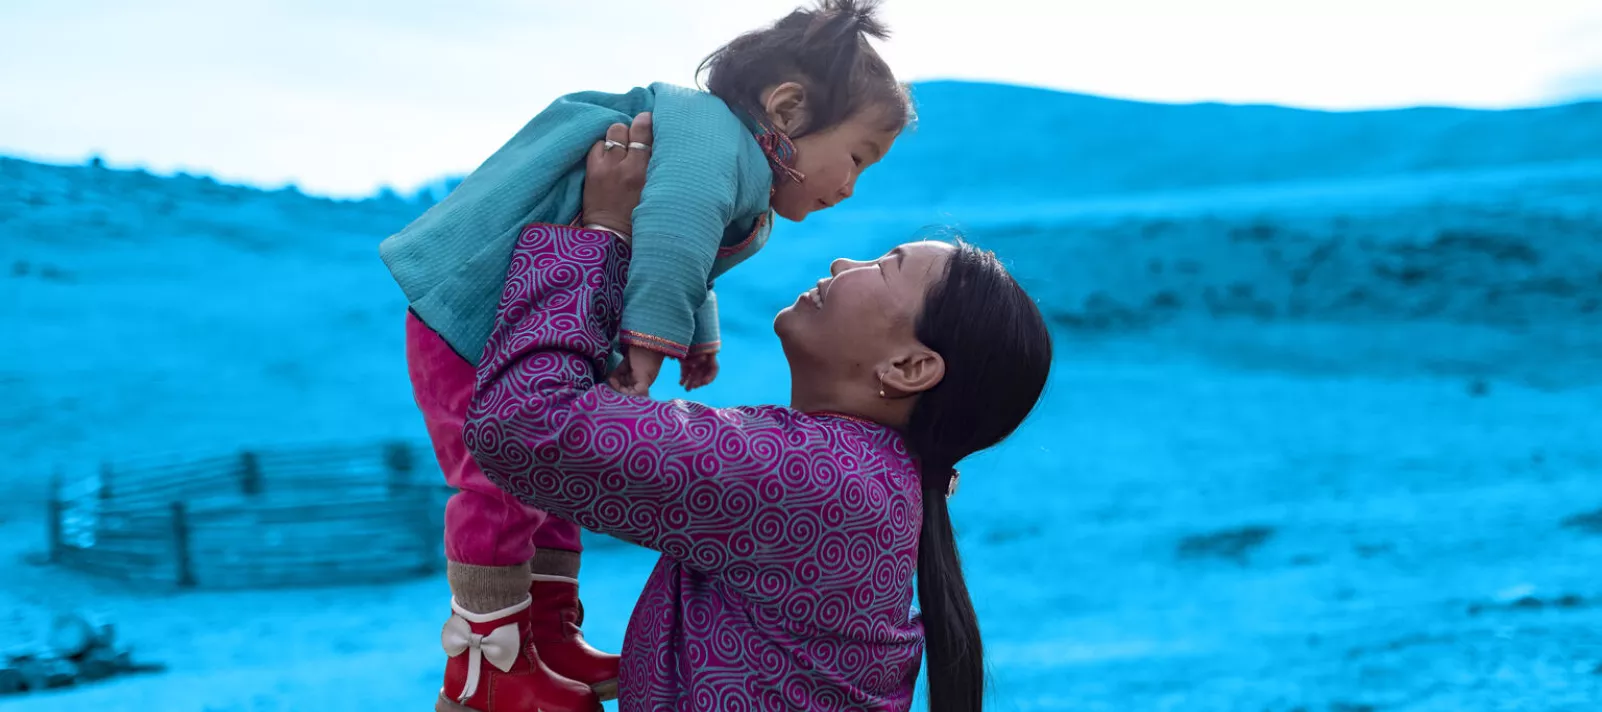 A mère portant son enfant près de leur yourte, Mongolie.